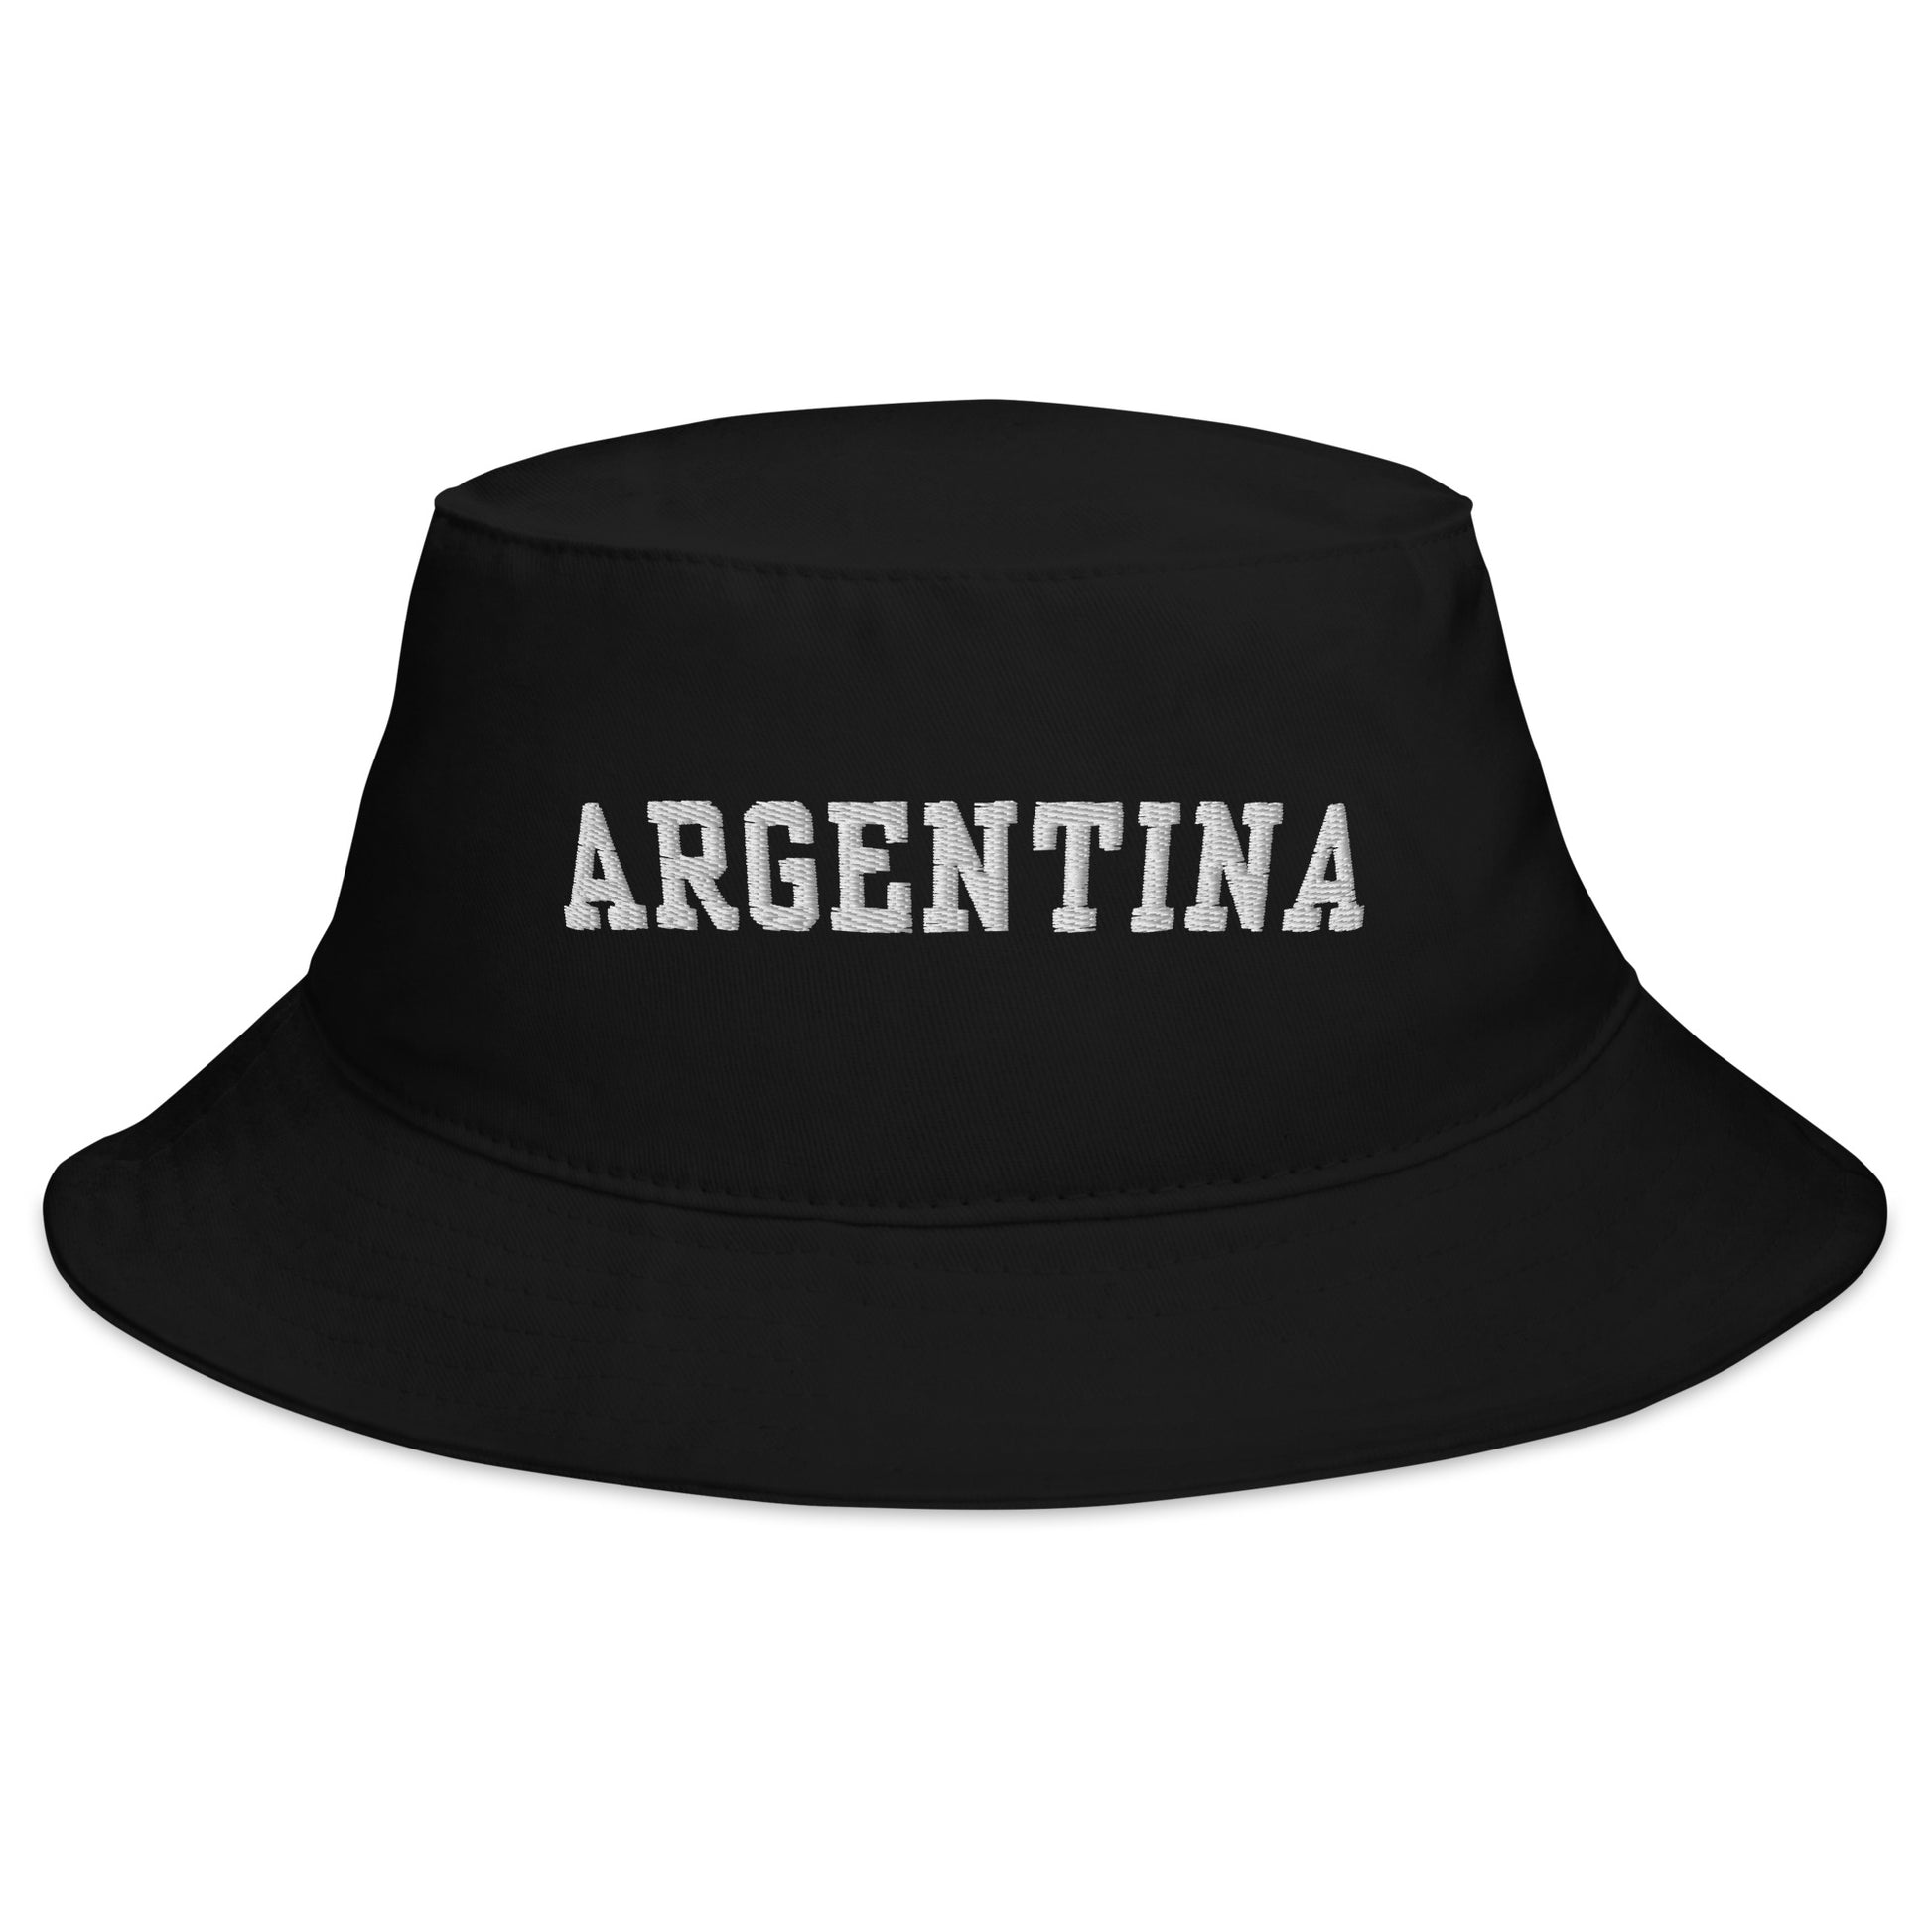 Argentina black Bucket Hat